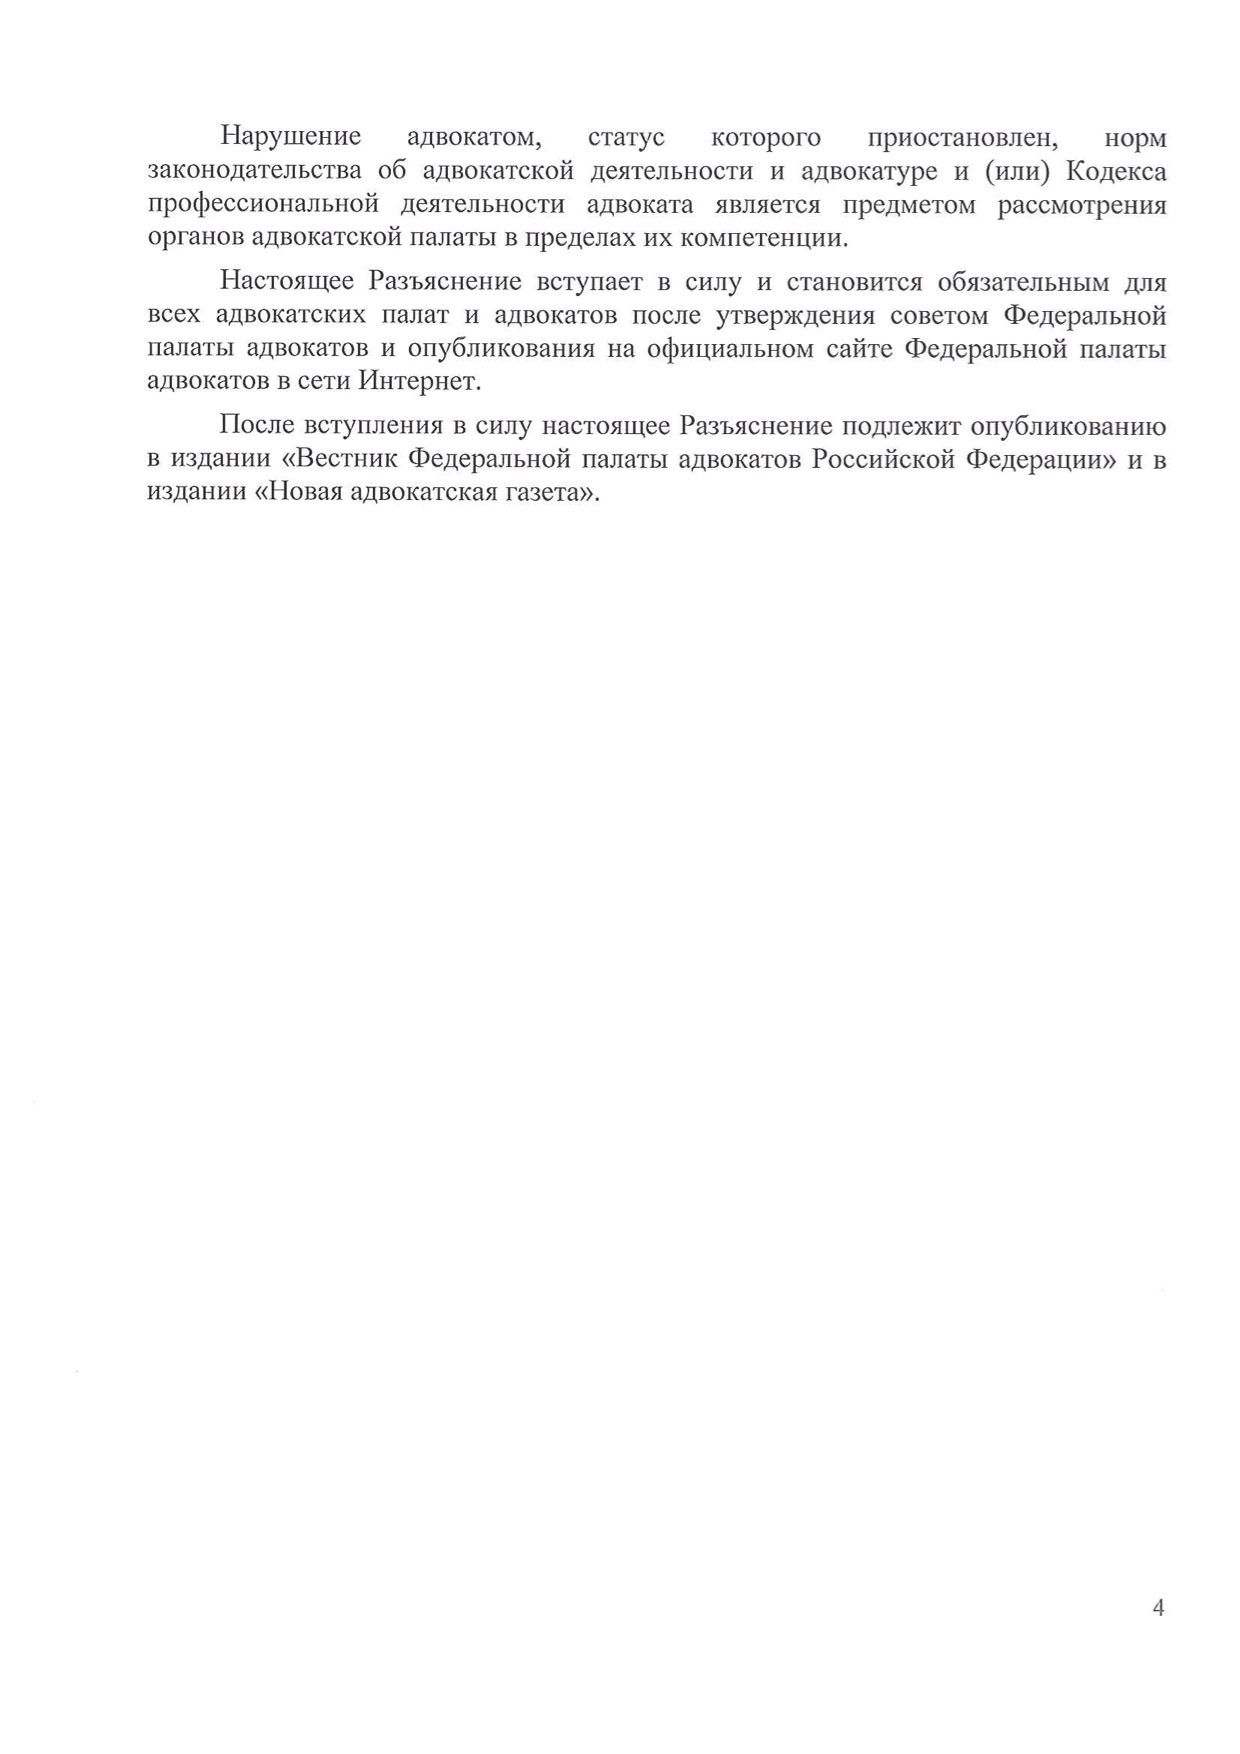 Разъяснения Комиссии ФПА по этике 04/17 (во вложении документ)